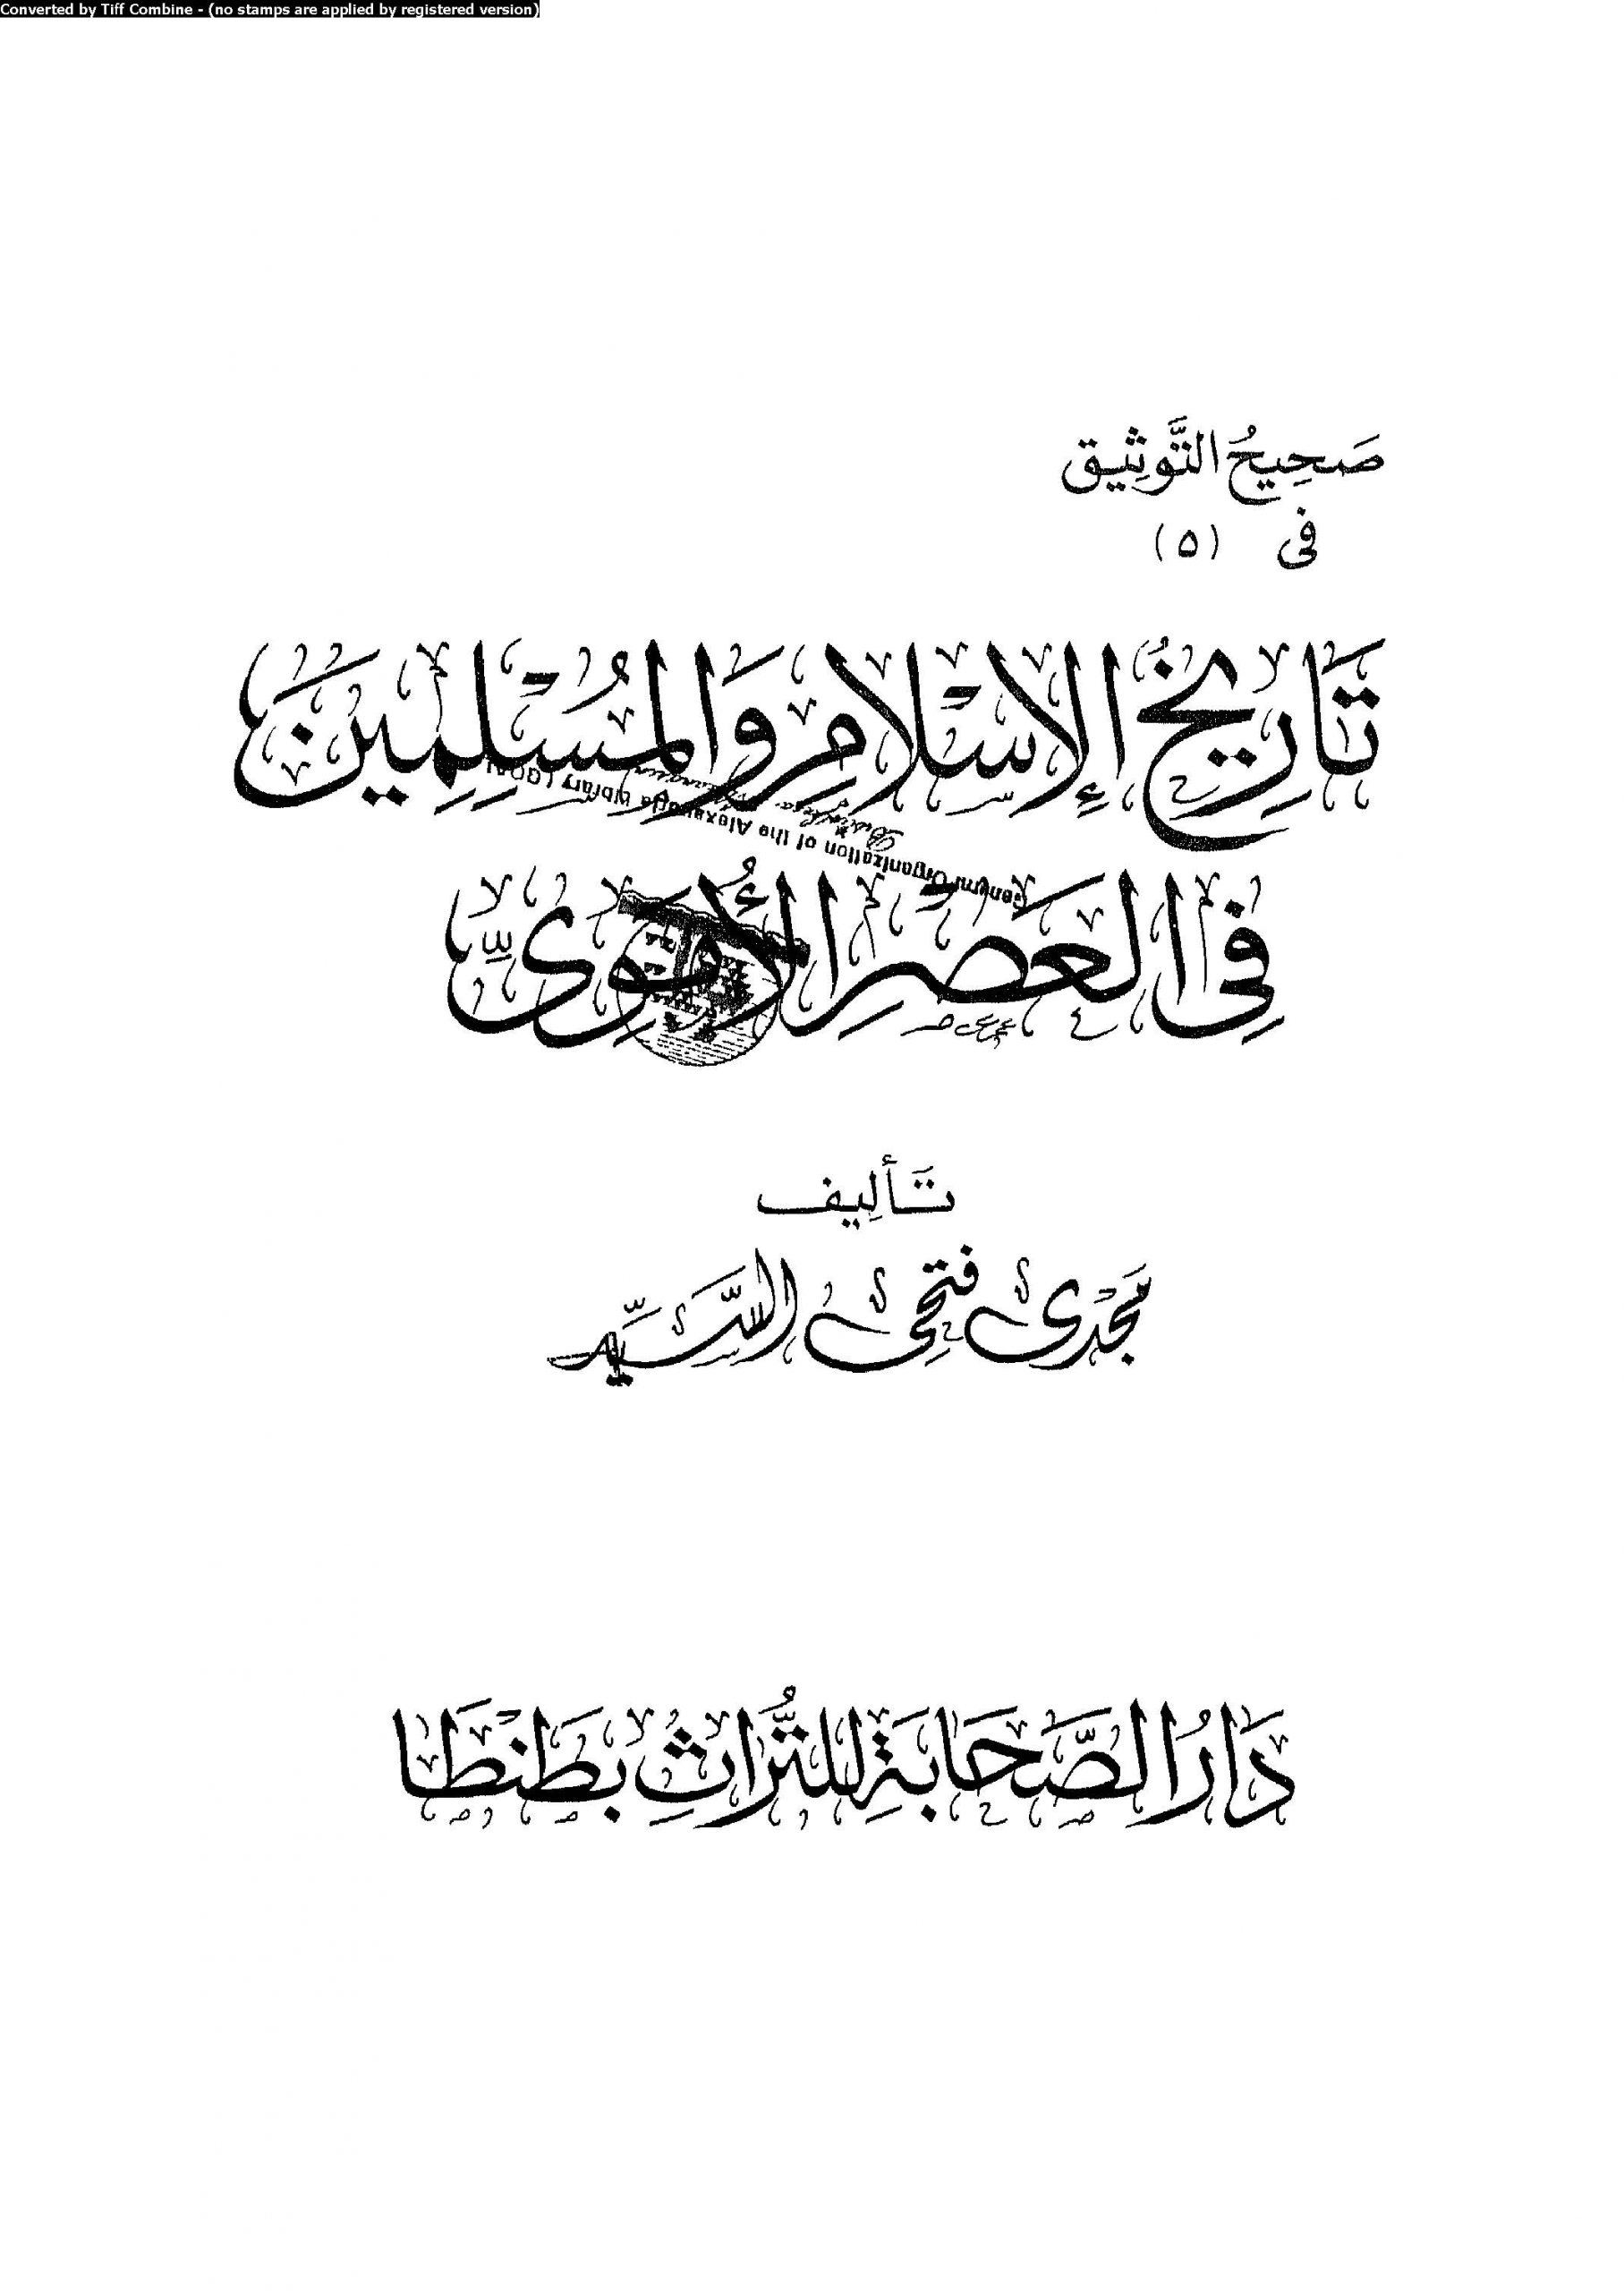 تحميل تاريخ الإسلام والمسلمين في العصر الأموي pdf مجرى فتحي السيد